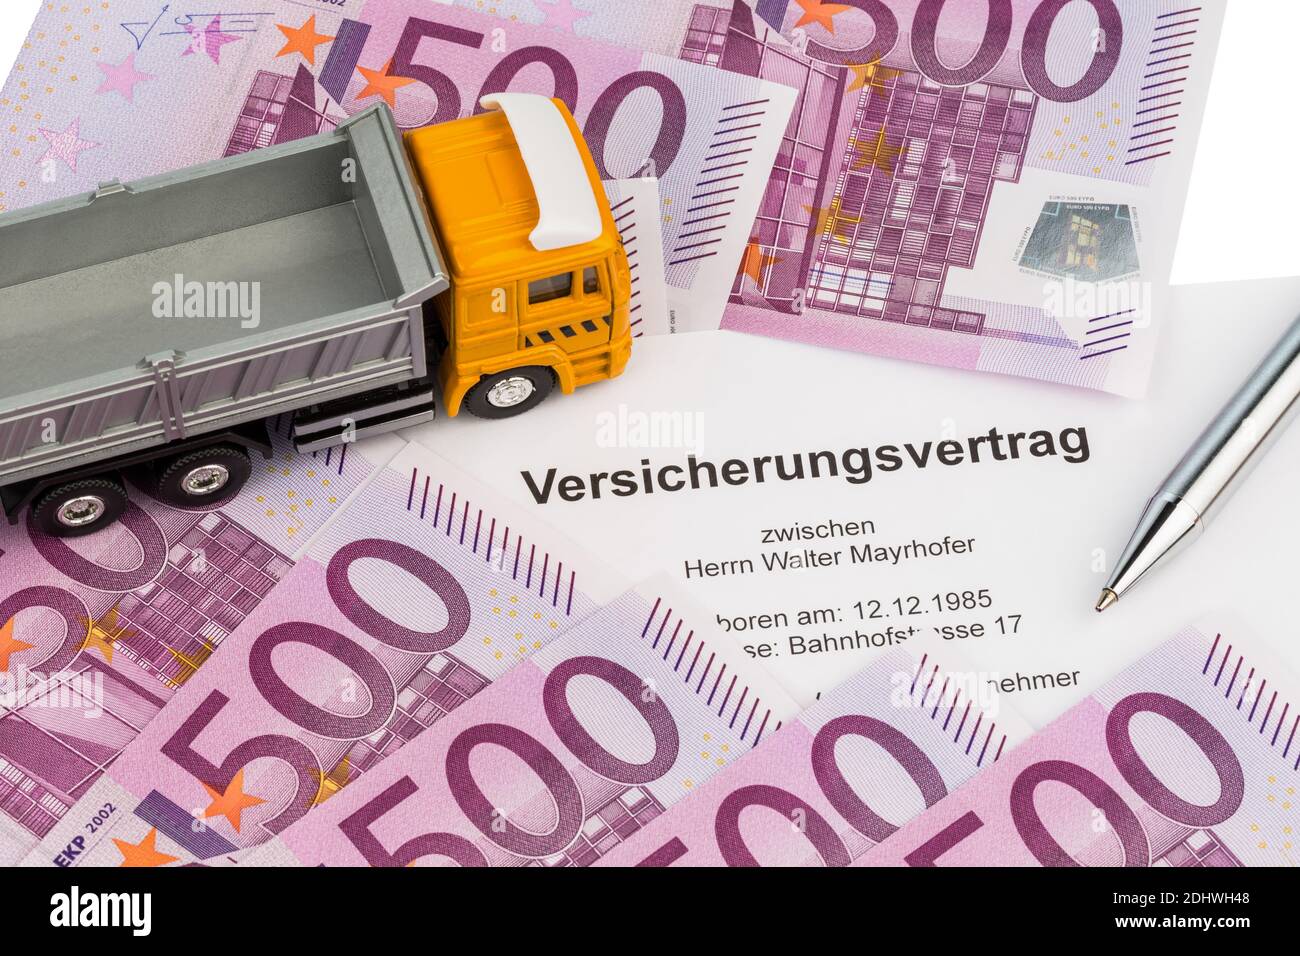 Ein Versicherungsvertrag für einen neuen Lastwagen. 500er Euro Banknoten, Stock Photo